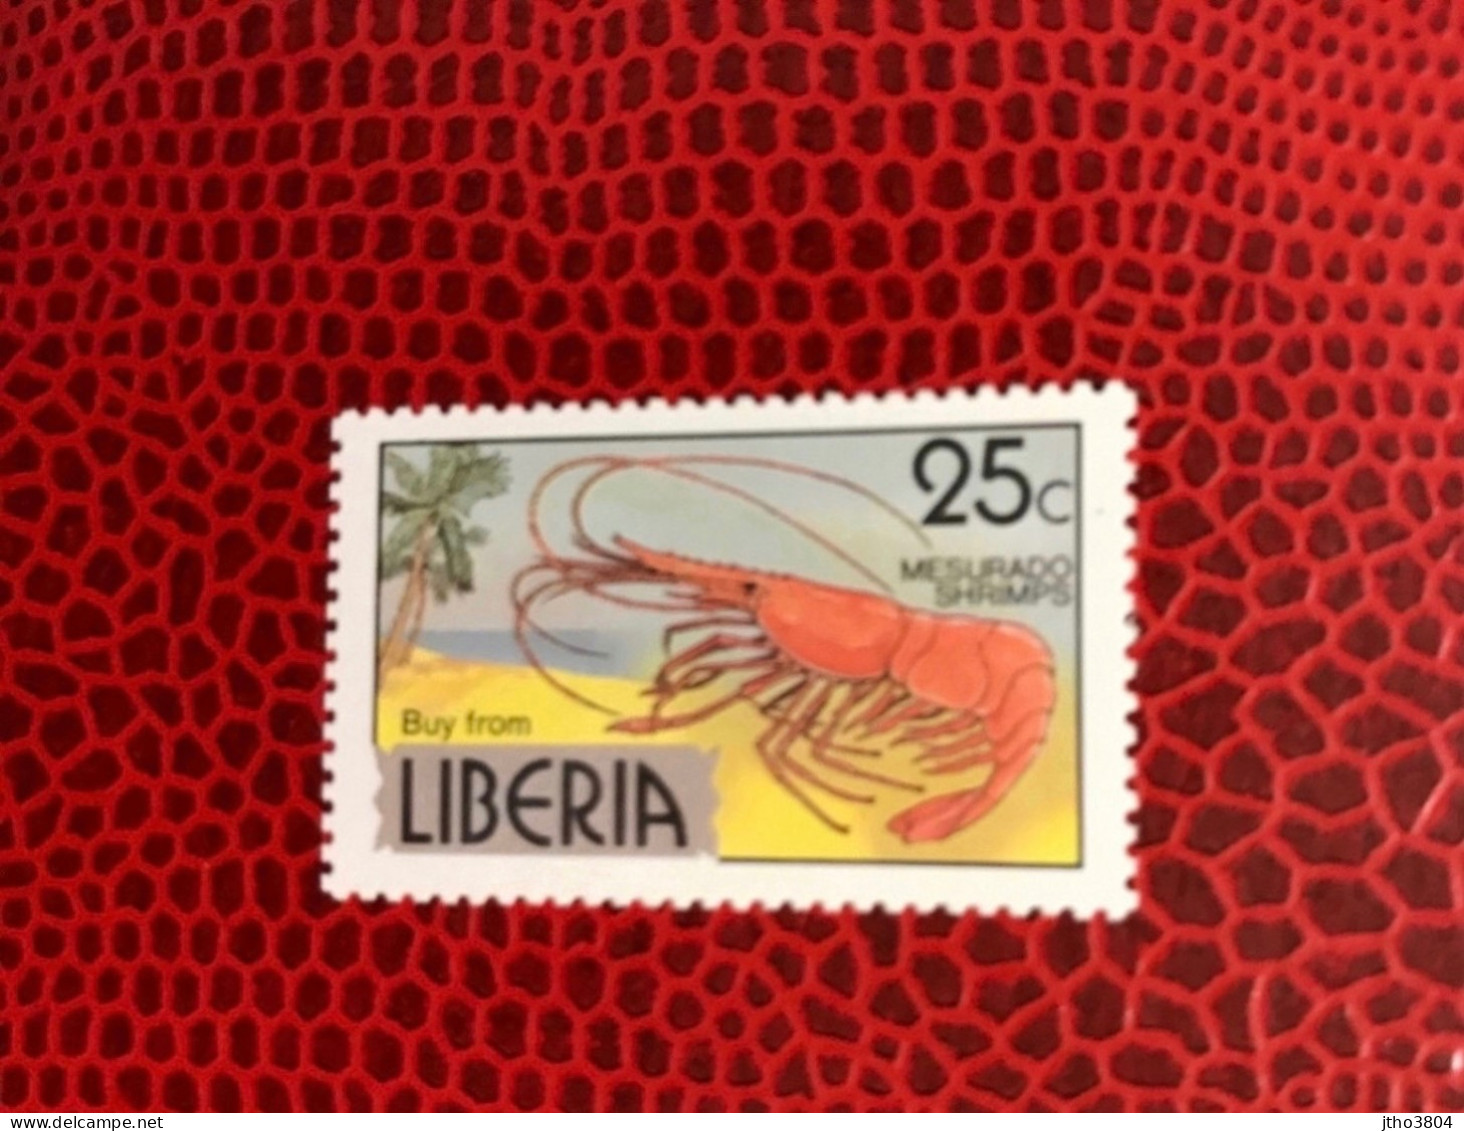 LIBERIA 1977 1v Neuf MNH ** YT 729 Crevette Shrimp - Crustaceans